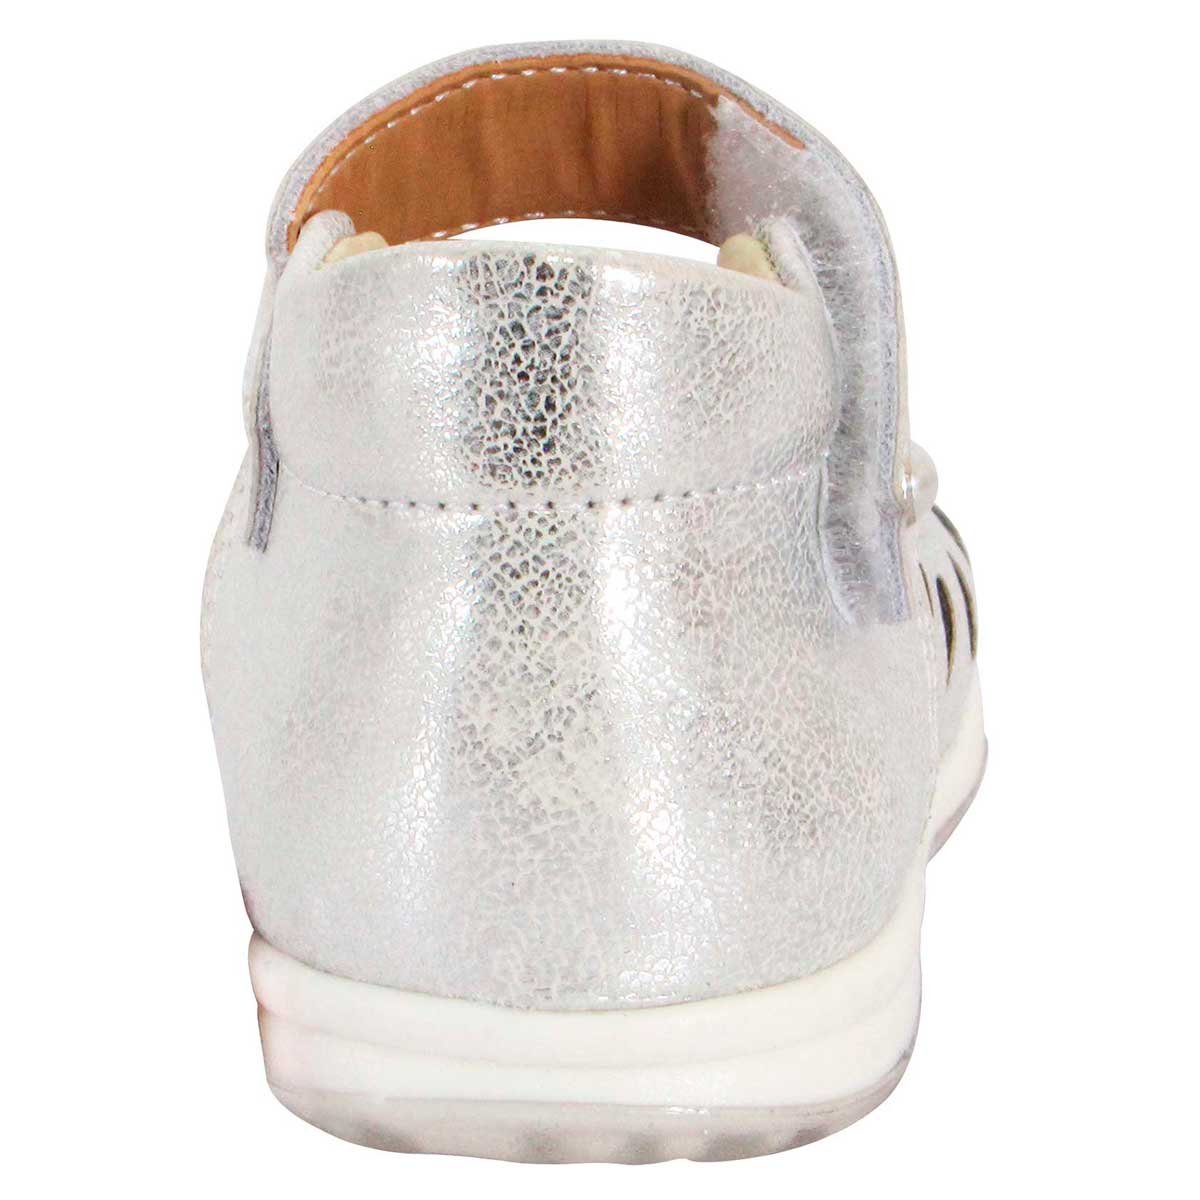 Zapato Bebe con Perforaciones Laser 13-15 Mickey 800517